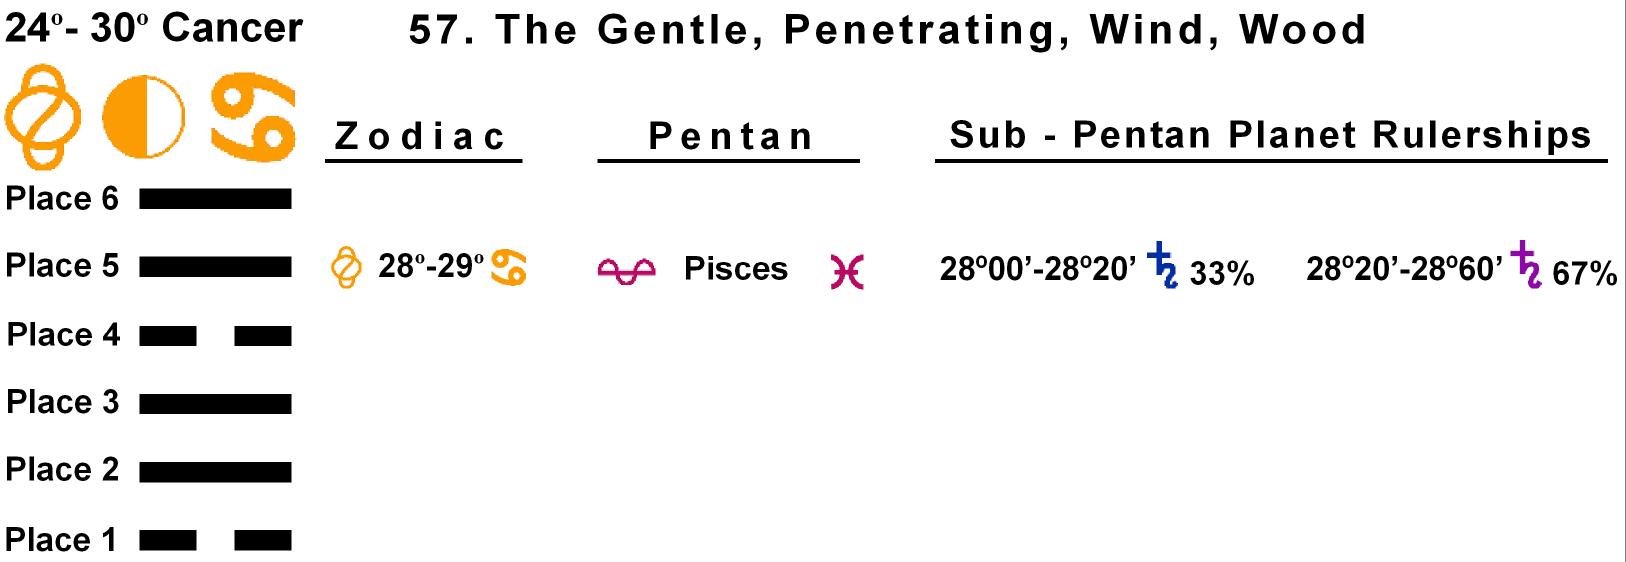 Pent-lines-04CA 28-29 Hx-57 The Gentle